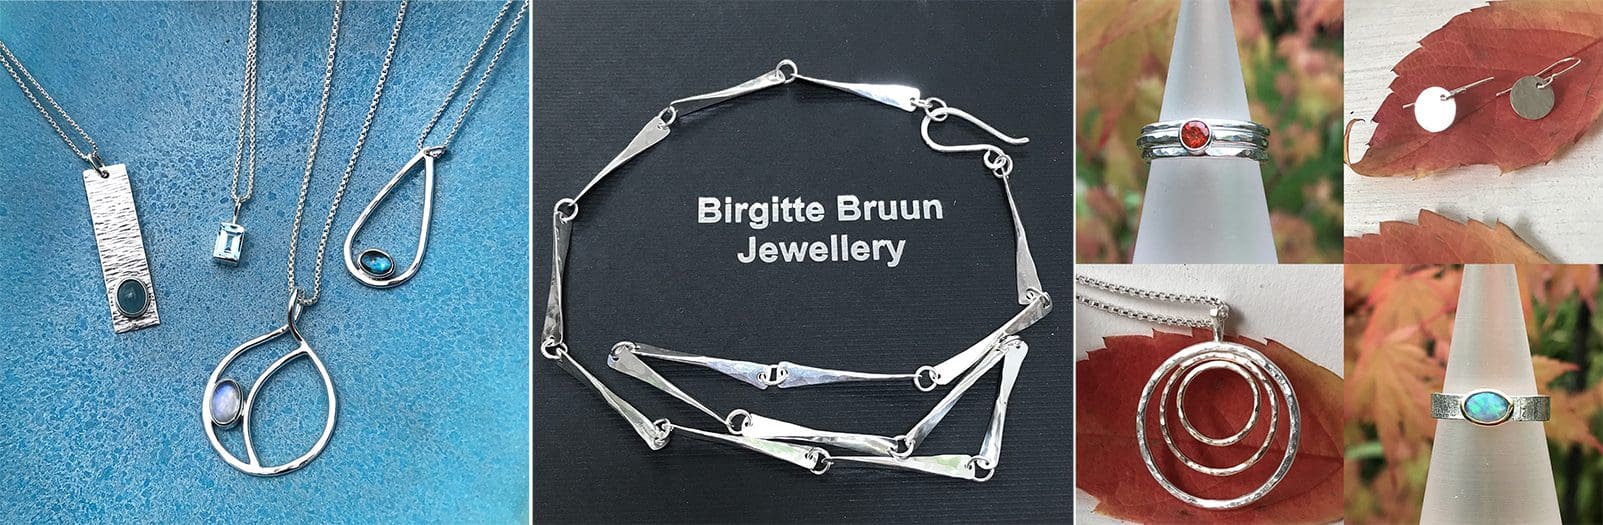 Birgitte Bruun Jewelley